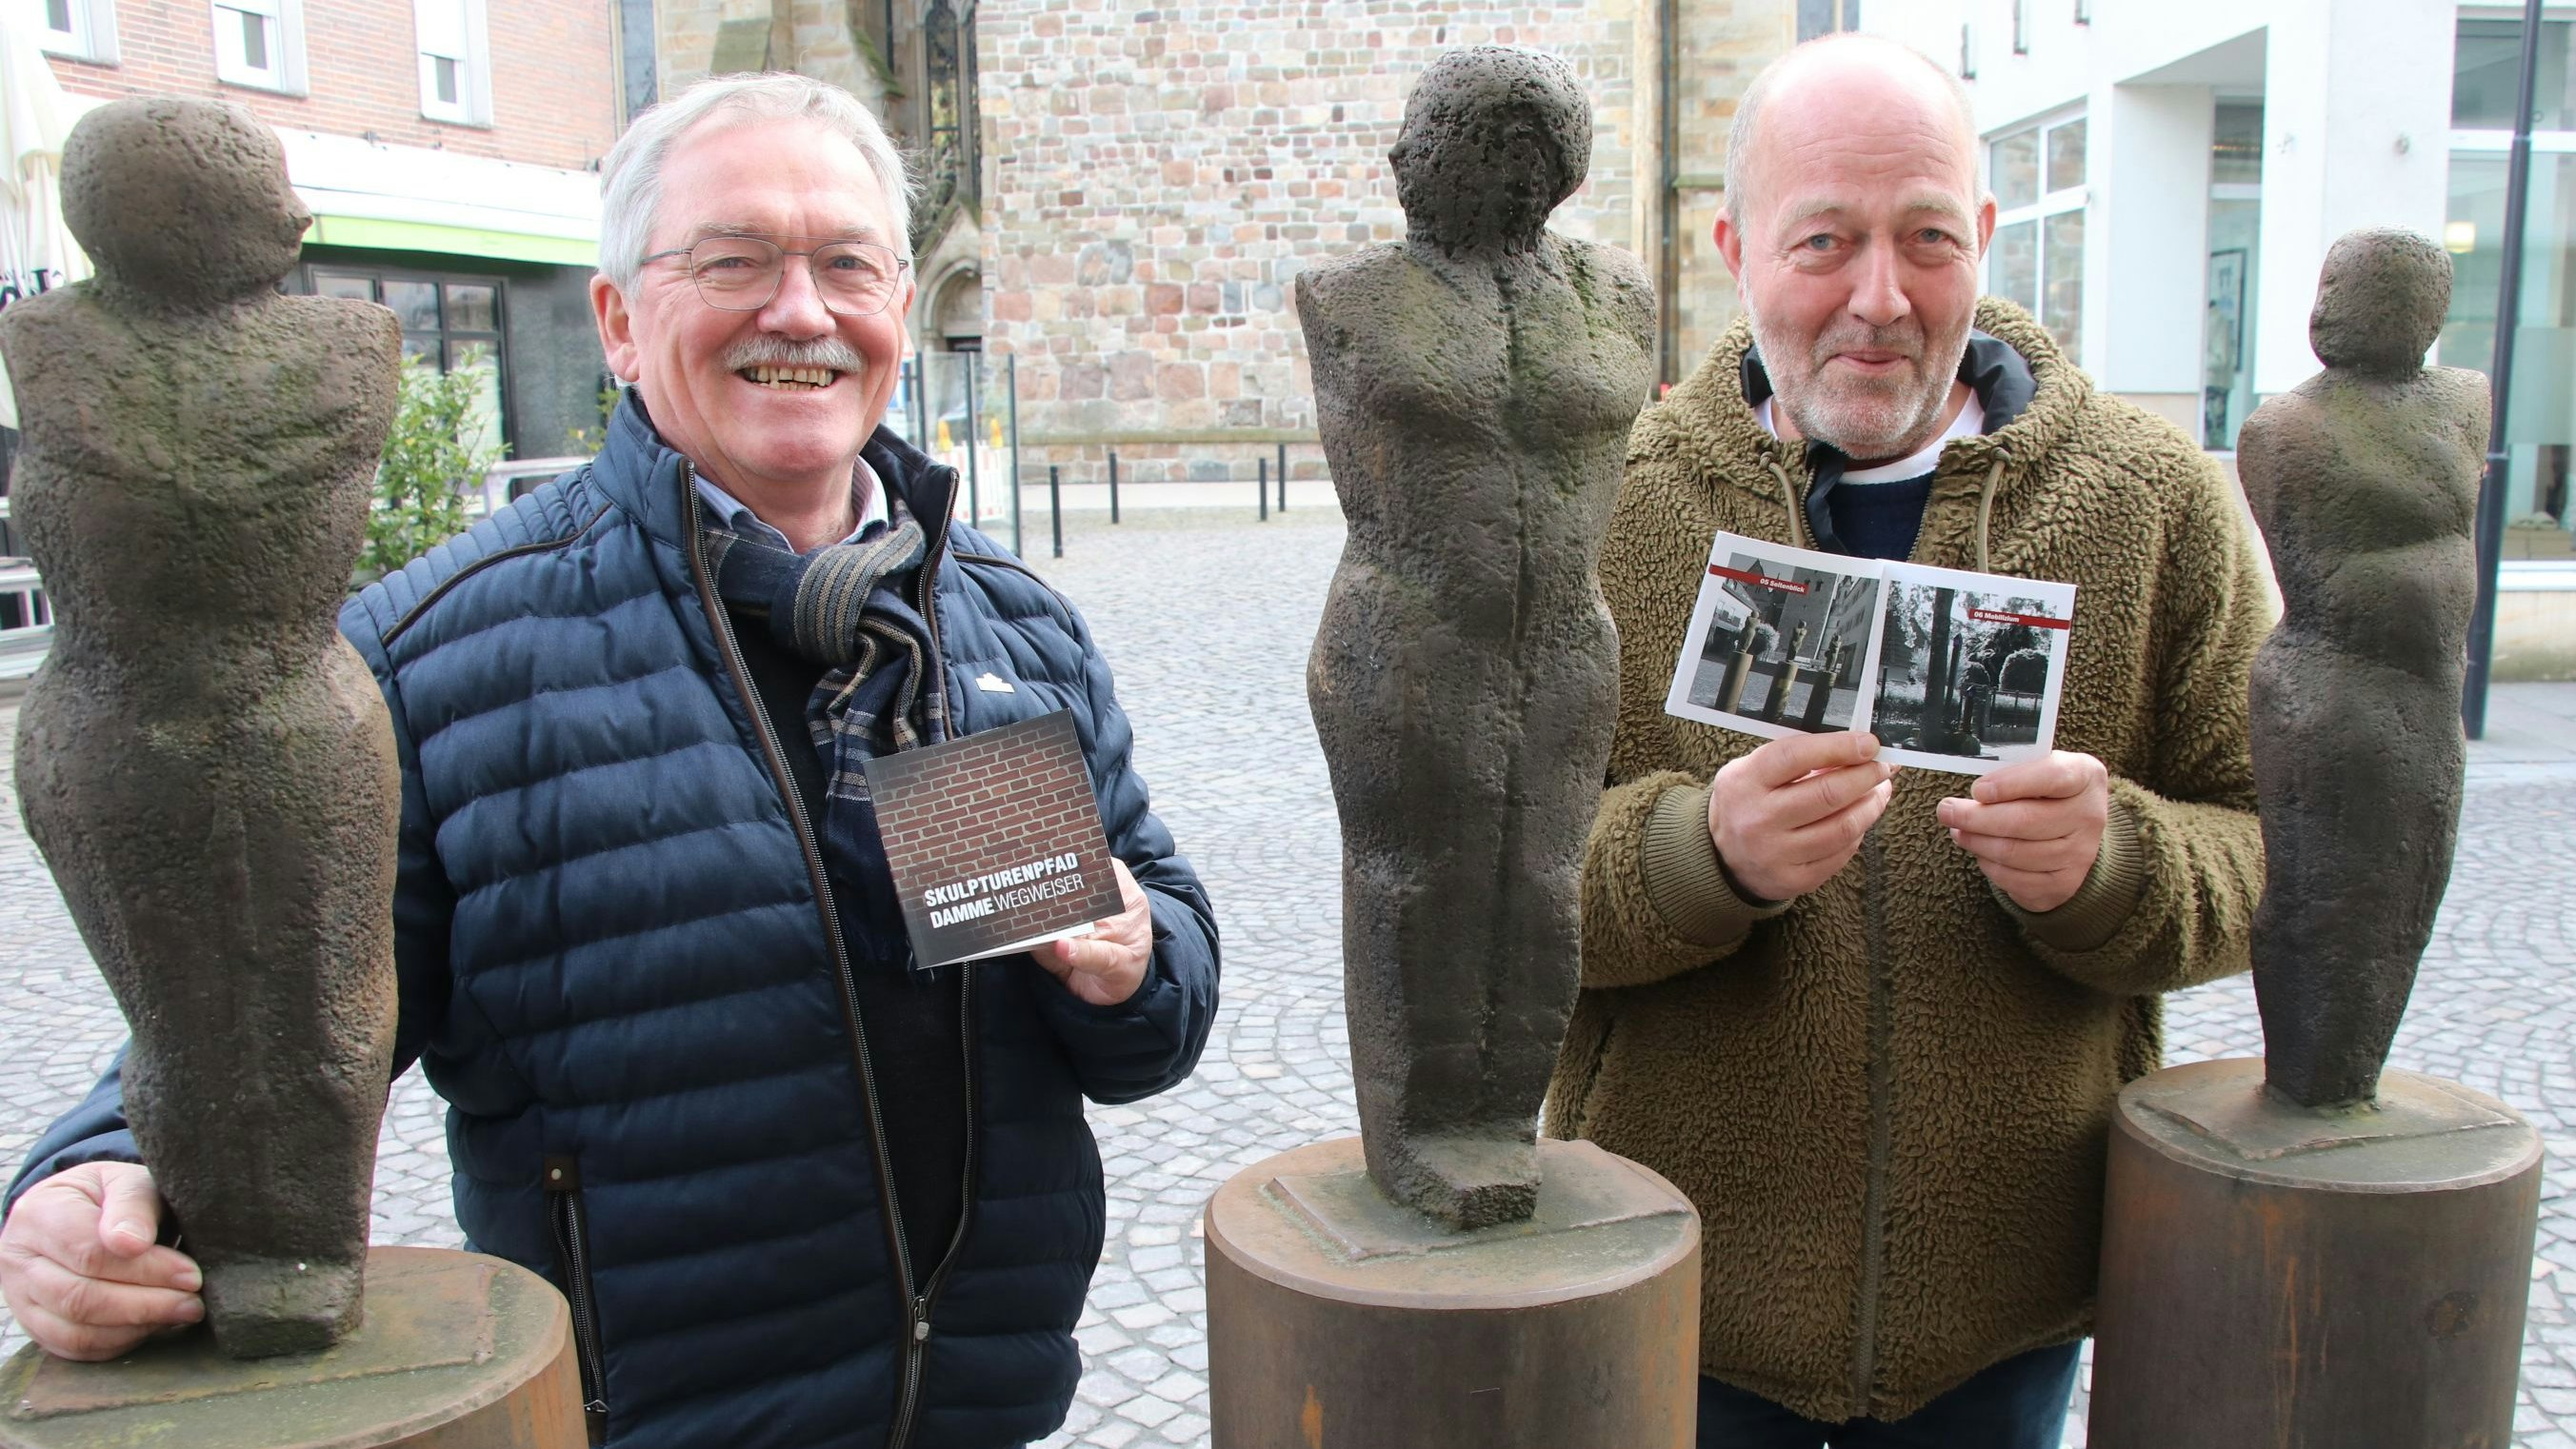 Zufriedene Gesichter: Heiko Bertelt (links) und Norbert Enker präsentieren vor der Skulptur "Seitenblick" den neuen Wegweiser über den Dammer Skulpturenpfad. Foto: Lammert